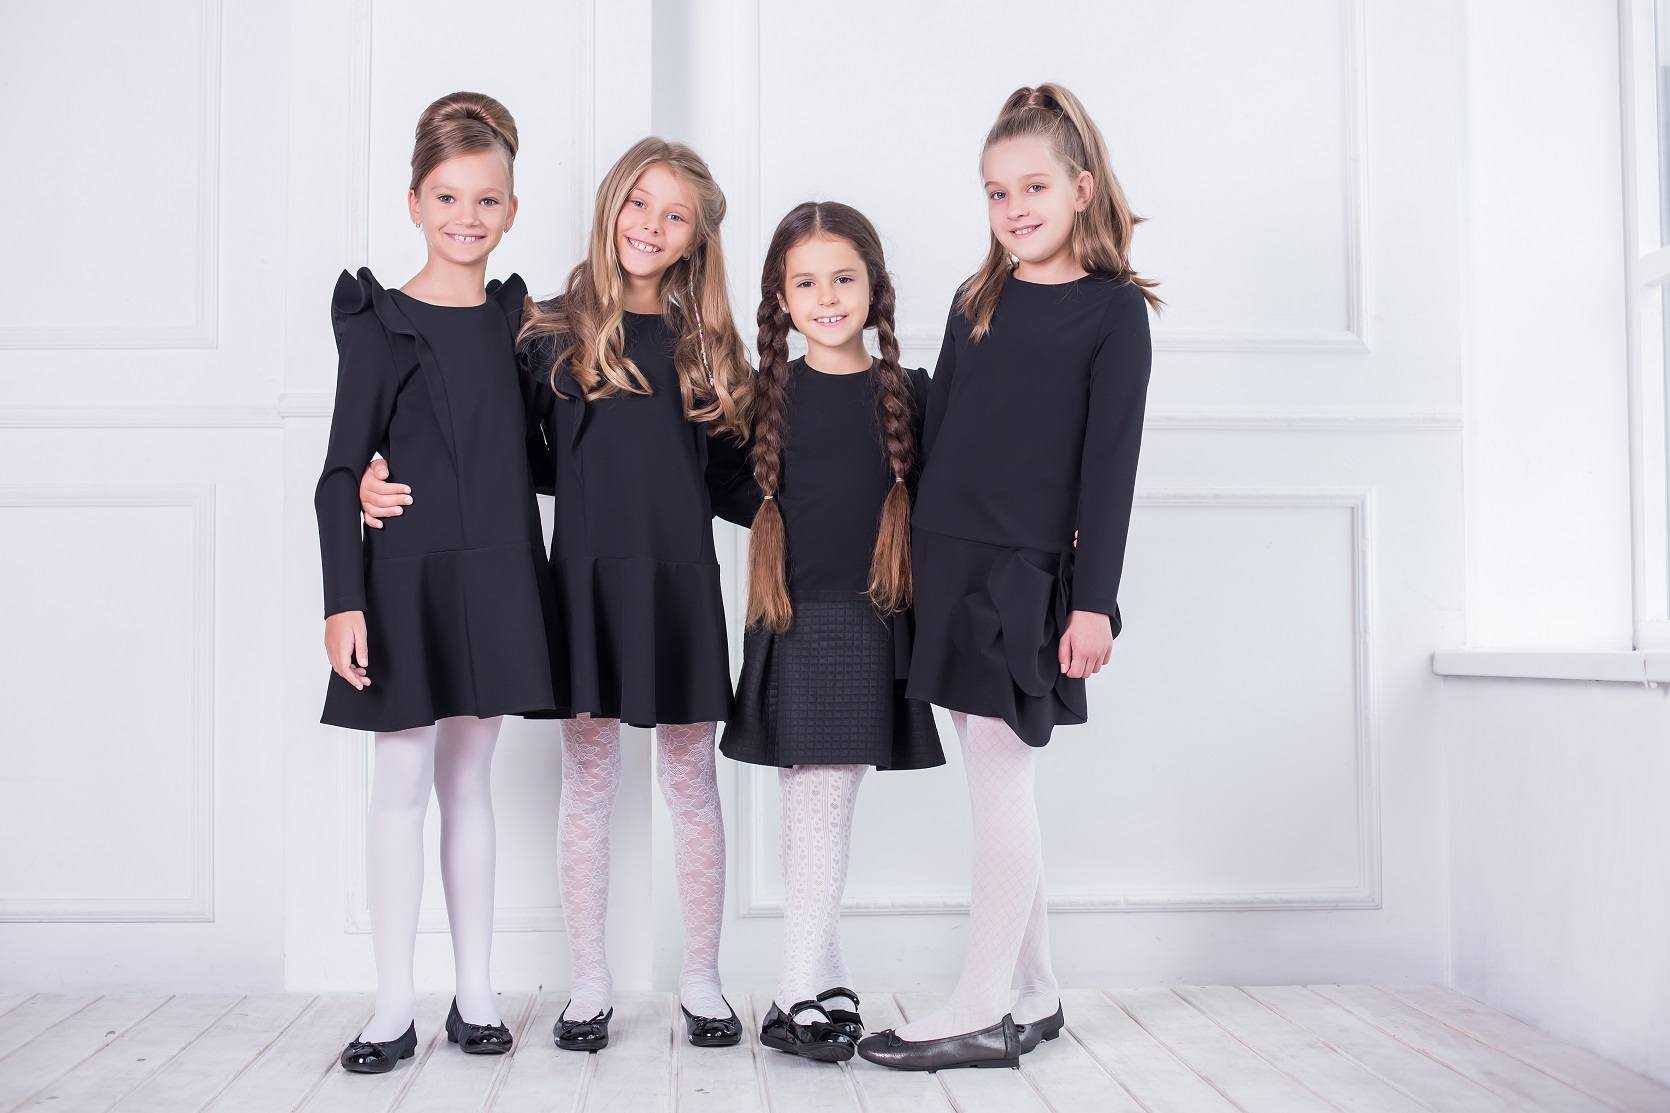 Модная школьная форма 2021 — фото стильных образов для девочек, мальчиков, подростков (брюки, юбки, сарафаны, костюмы)